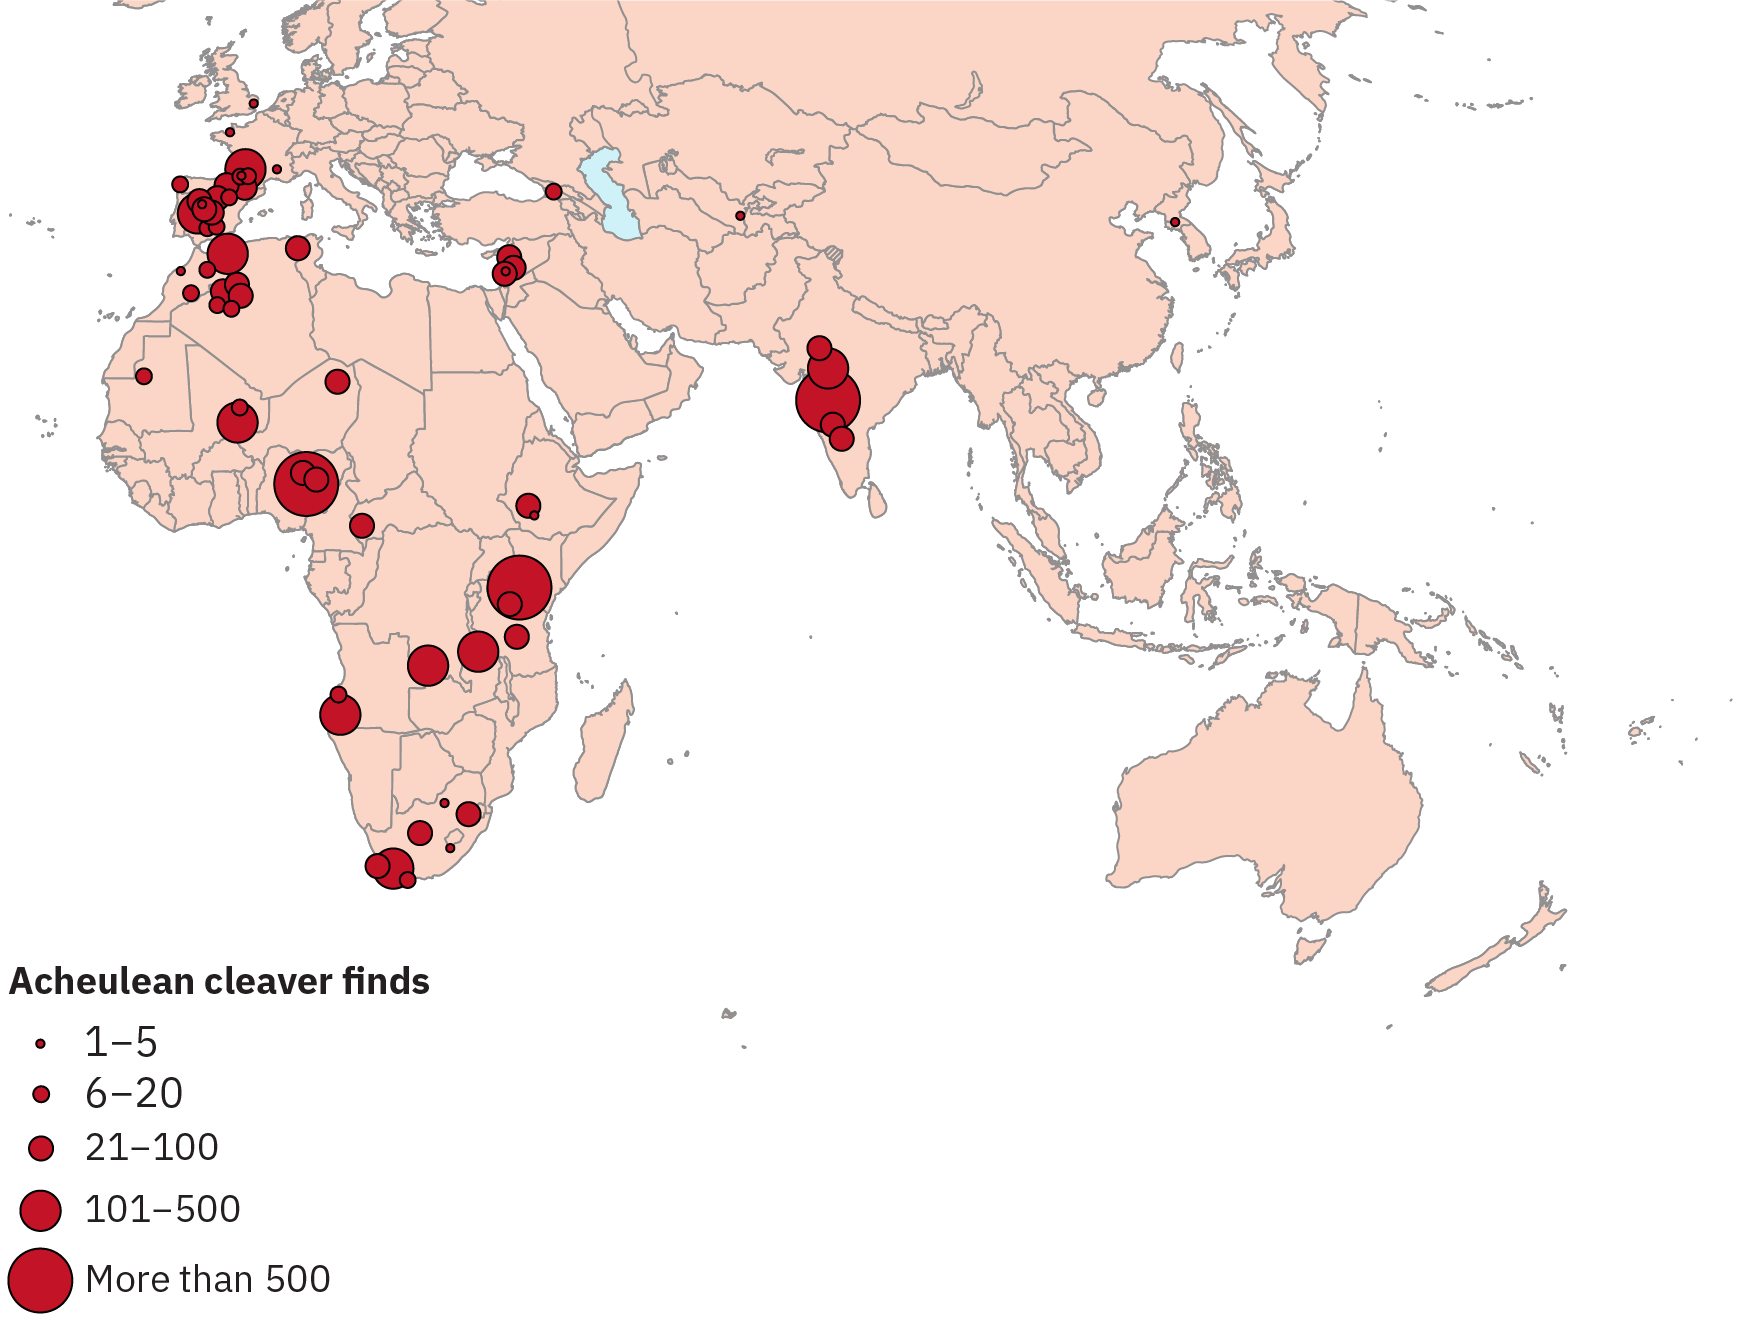 علامات تشير إلى عدد اكتشافات الساطور الأشولي المفروضة على خريطة أوروبا وآسيا وأفريقيا. هناك مجموعات من الاكتشافات في إسبانيا والهند ومناطق معينة من إفريقيا.